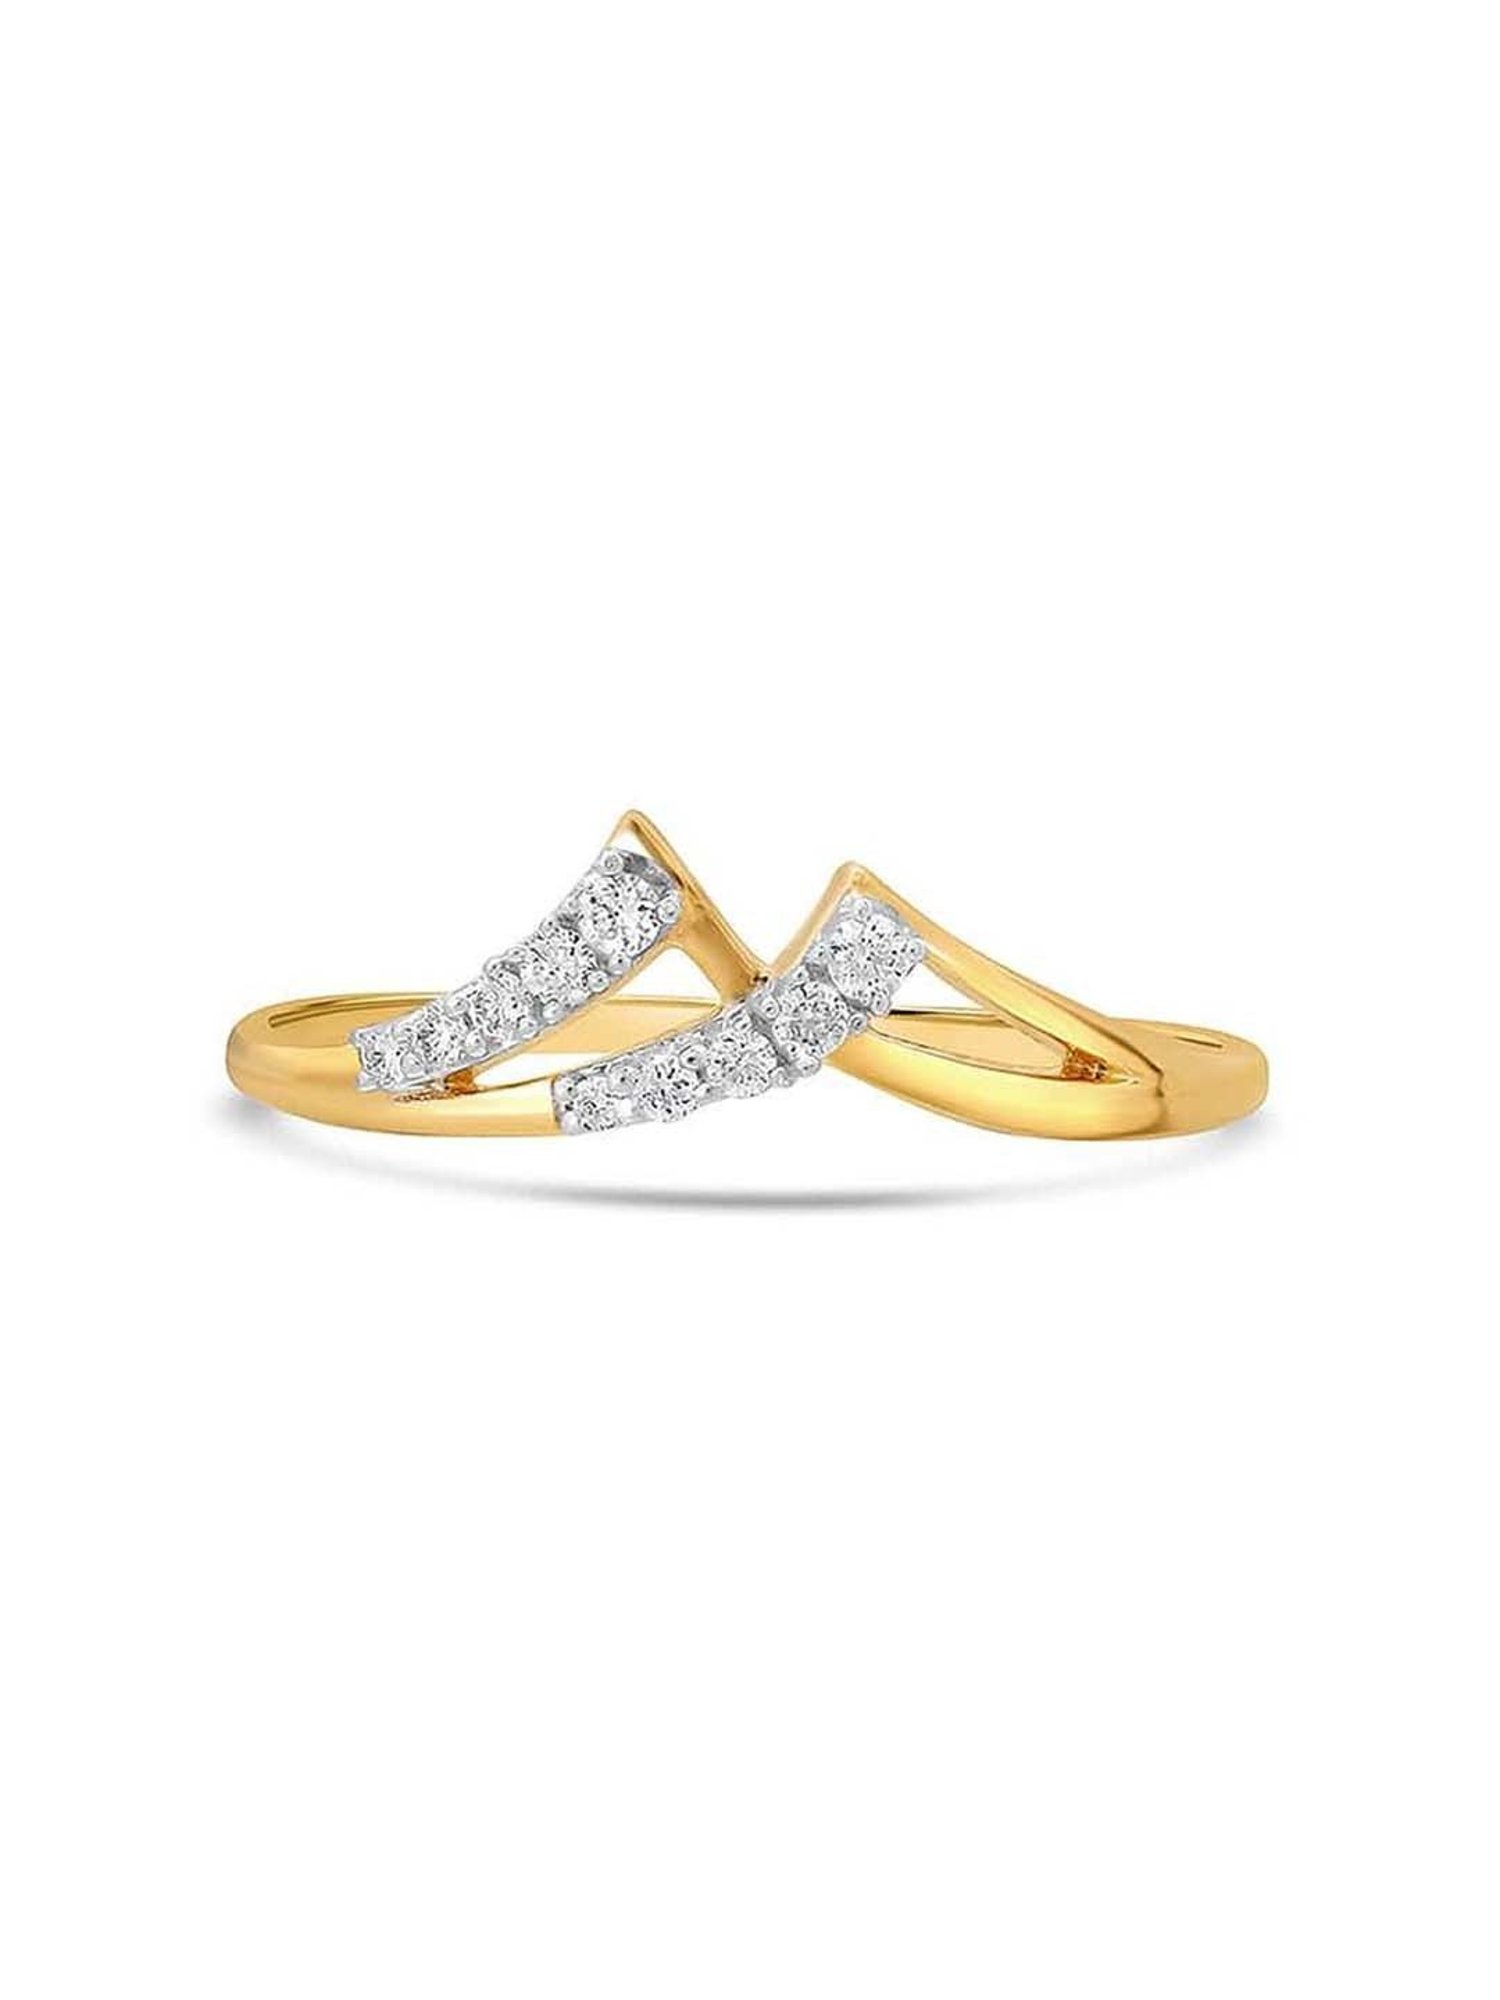 Buy Square Diamond Finger Ring For Men Online | ORRA